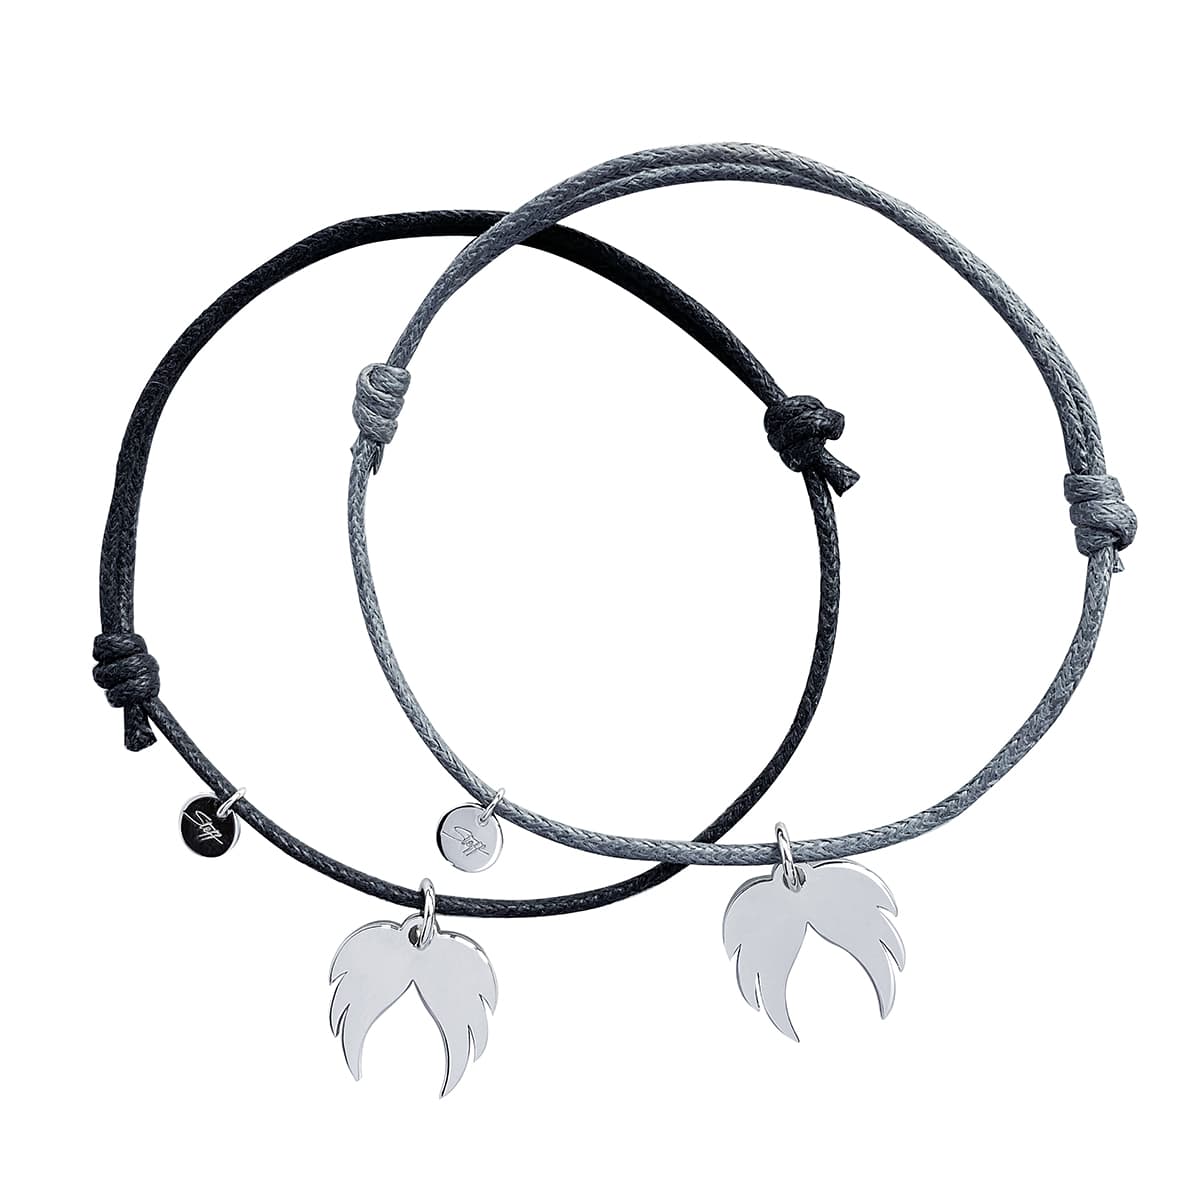 Steff Friendship Bracelets with Guardian Angel Wings Charm - Steffans Jewellers